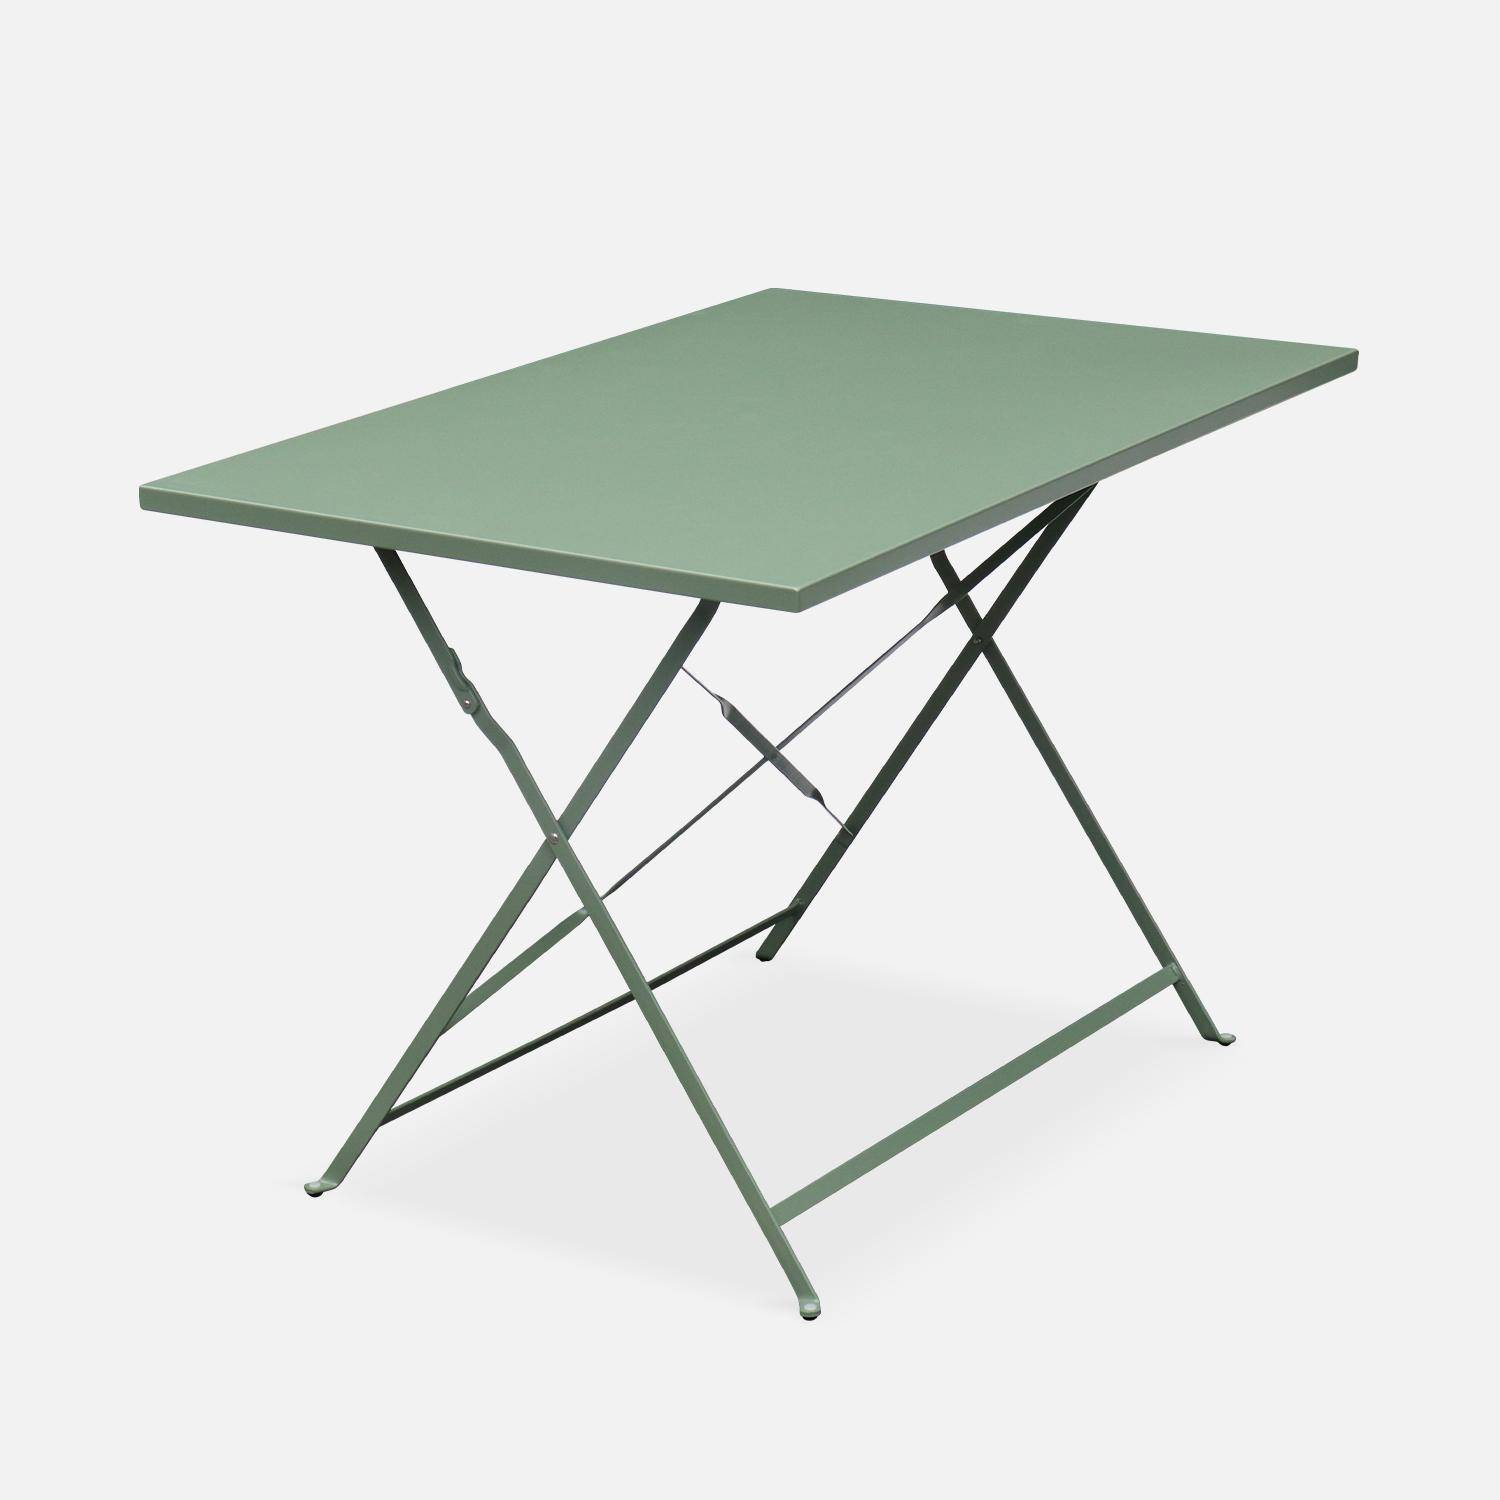 Tavolo da giardino, bar bistrot, pieghevole - modello: Emilia, rettangolare, colore: Grigio verde - Tavolo, dimensioni: 110x70cm, con quattro sedie pieghevoli, acciaio termolaccato,sweeek,Photo3